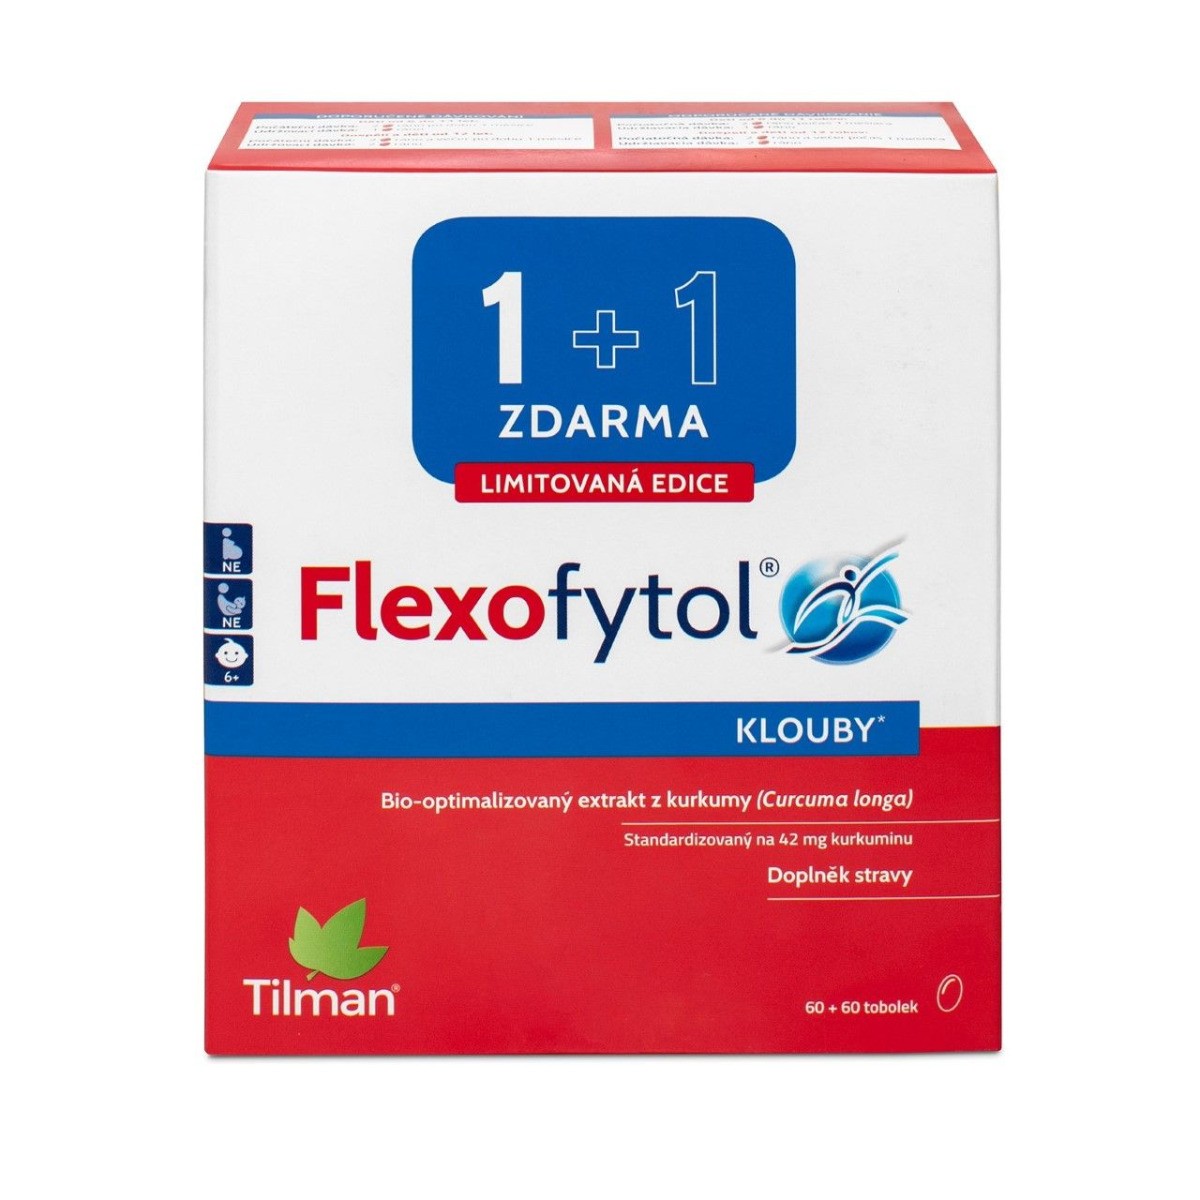 Flexofytol 60+60 tobolek Flexofytol